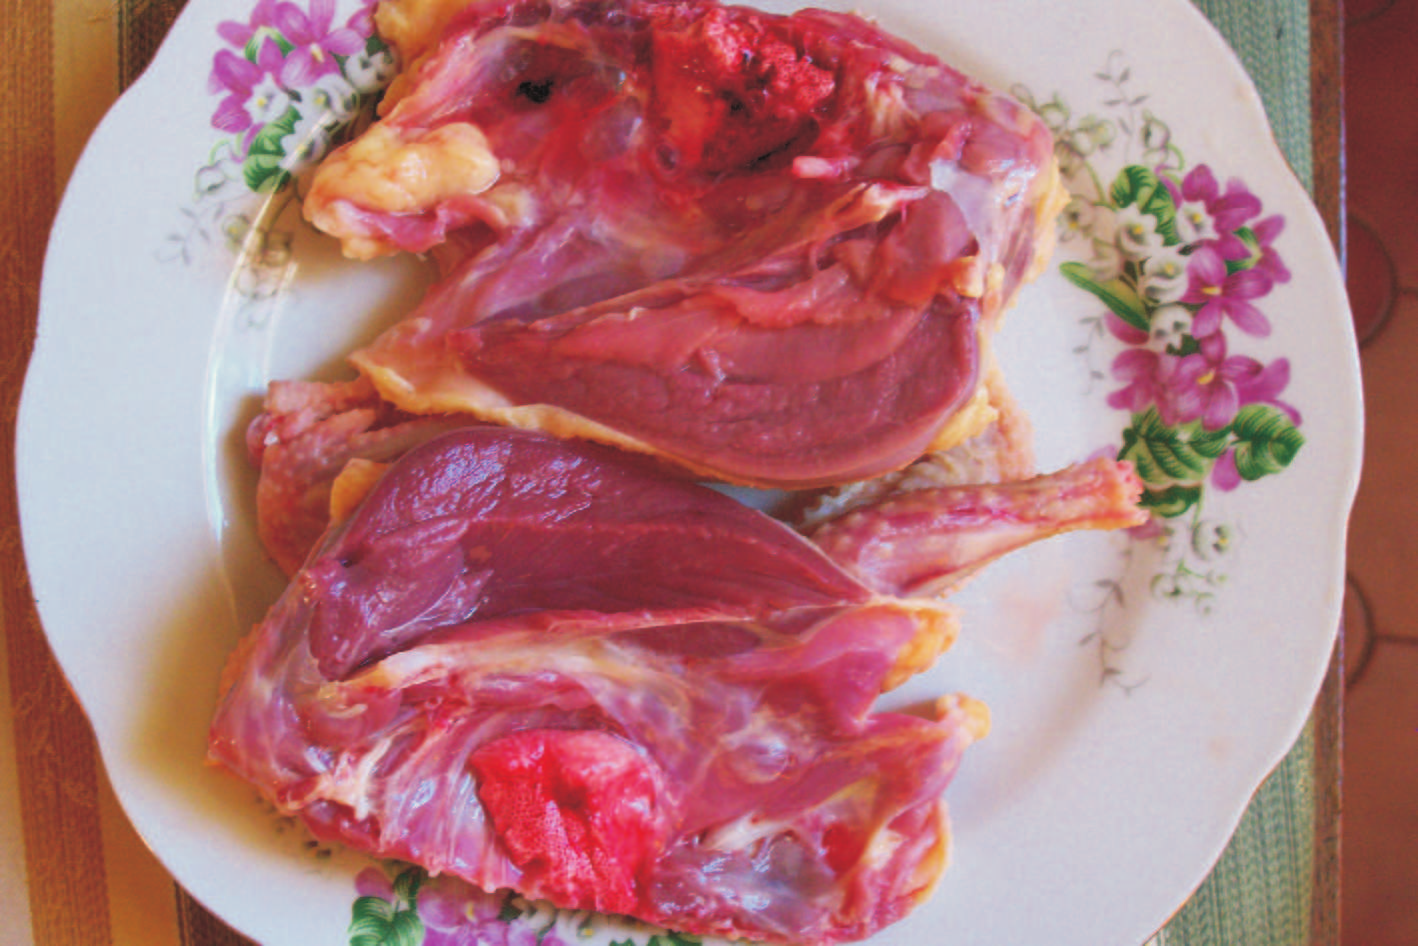 Húsuk vörösebb, mint a húsgalamboké és összetétele is más. Ezt igazolja az alábbi fénykép és a Budapesti Corvinus Egyetem Élelmiszertudományi Kar vizsgálati eredménye, ld. a 3. számú melléklet.